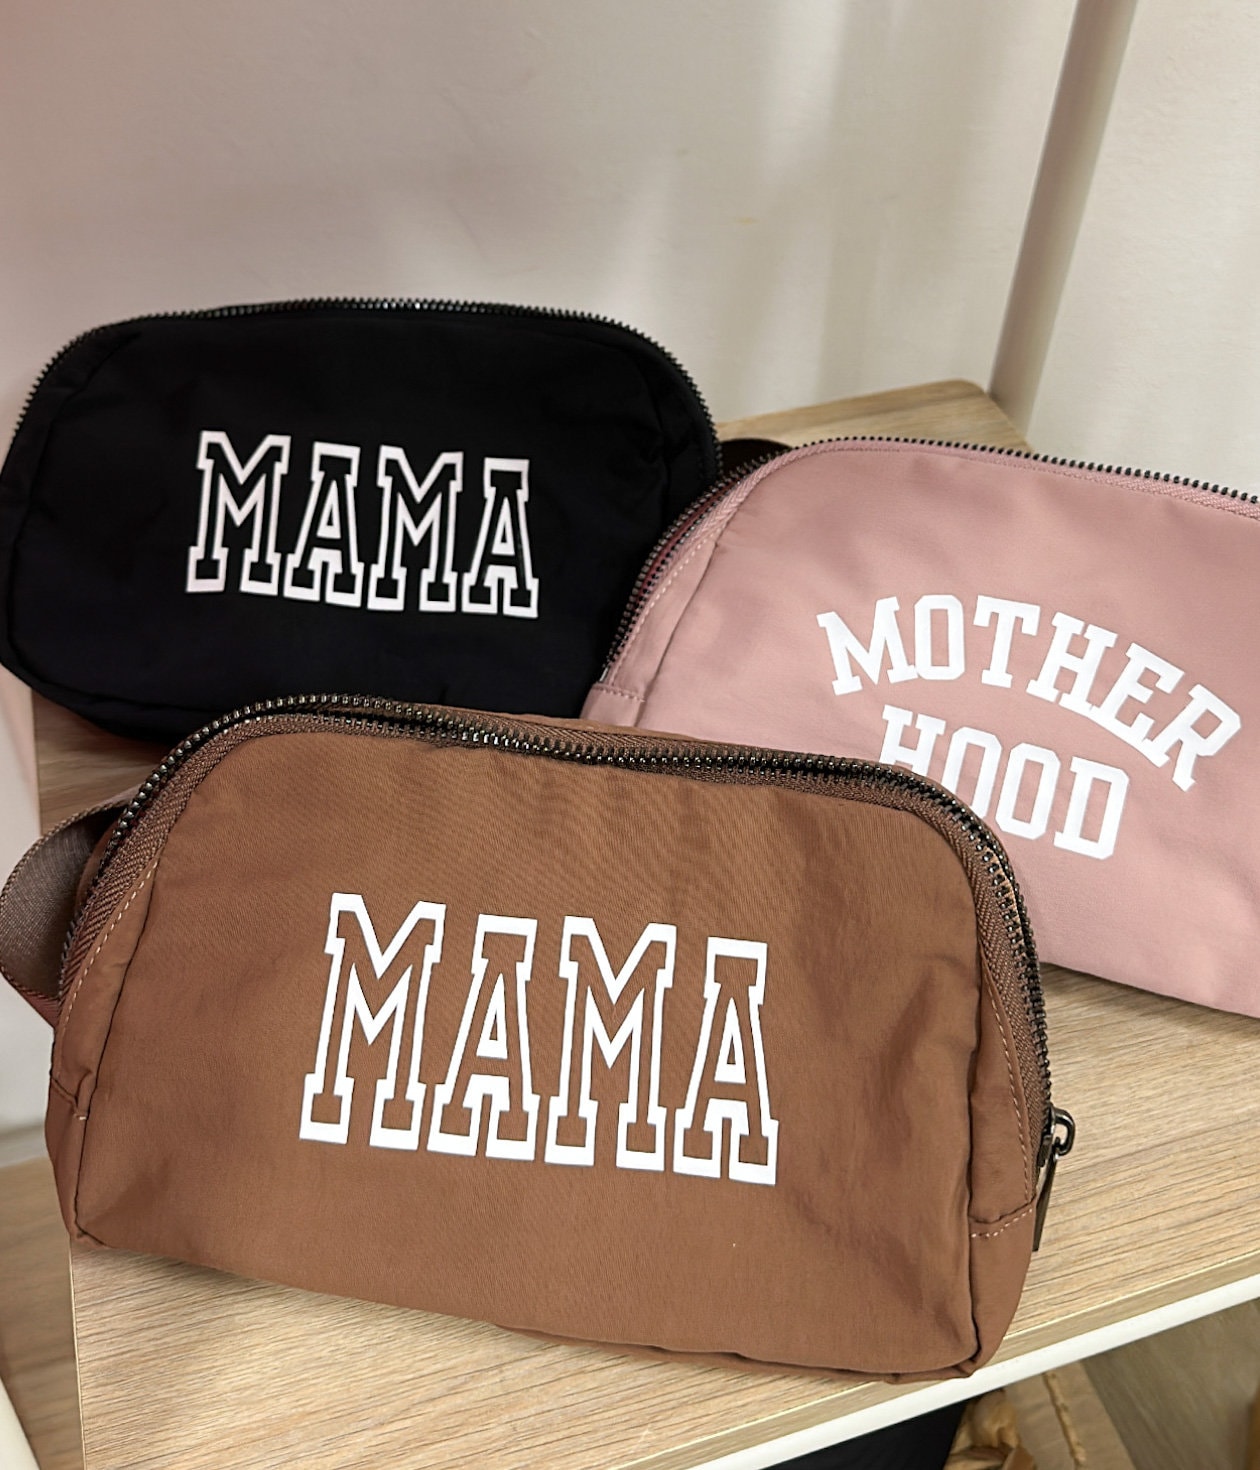 Mamas Bag Organizer – Mamas Gift